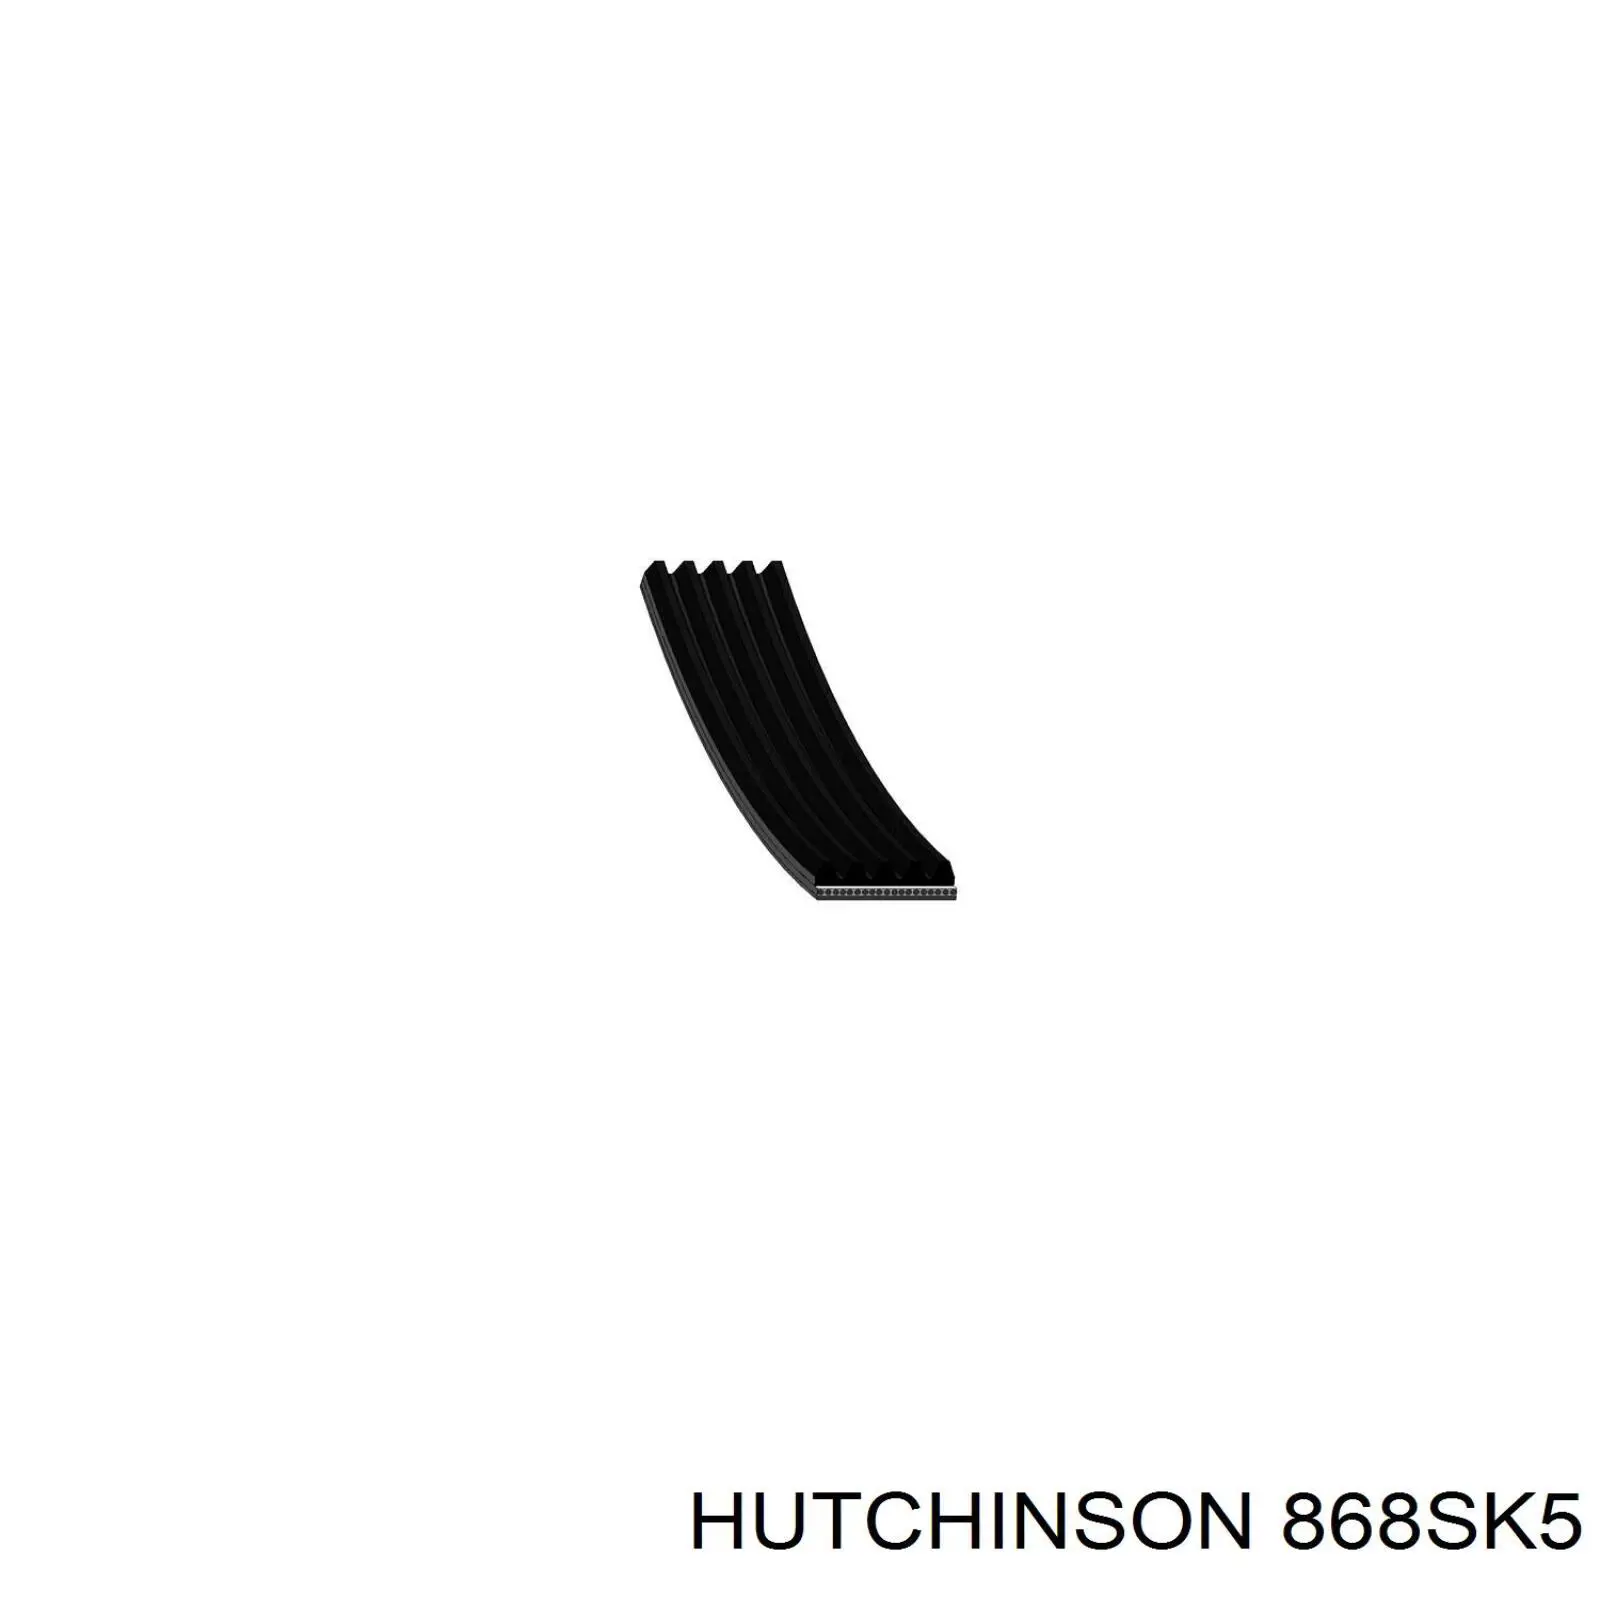 868SK5 Hutchinson correa trapezoidal